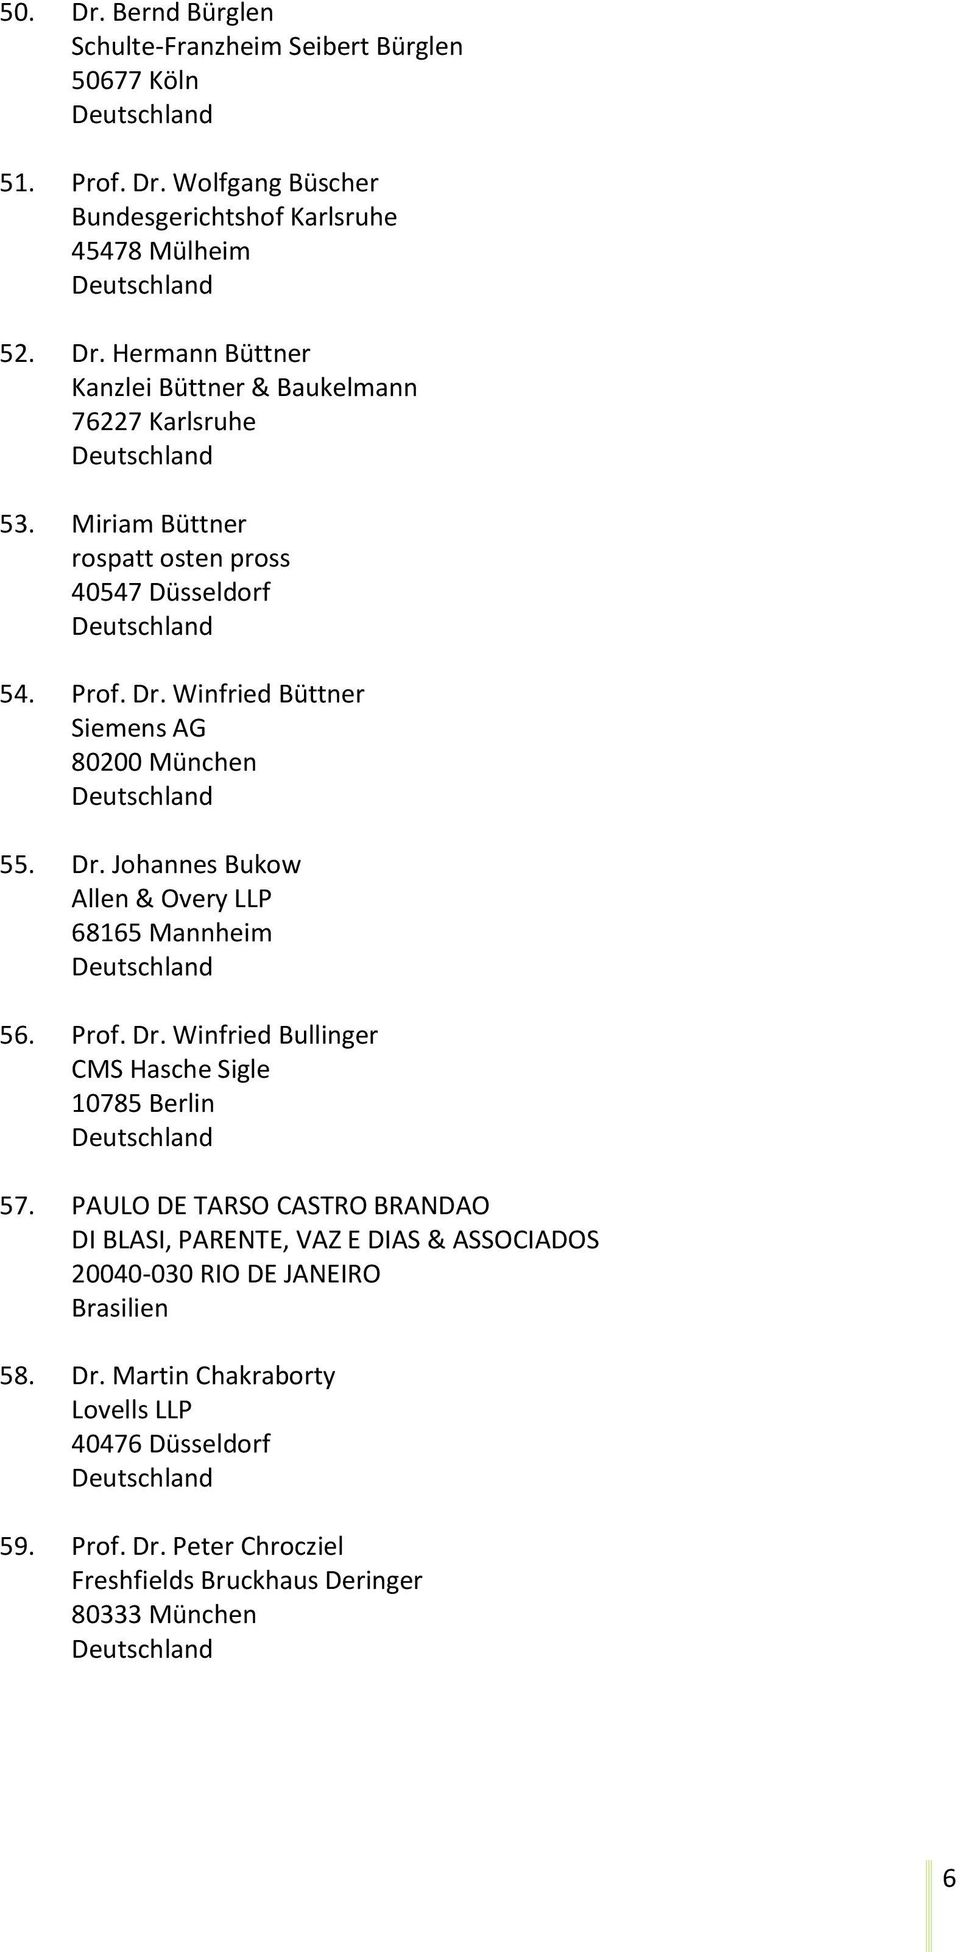 Prof. Dr. Winfried Bullinger CMS Hasche Sigle 10785 Berlin 57.